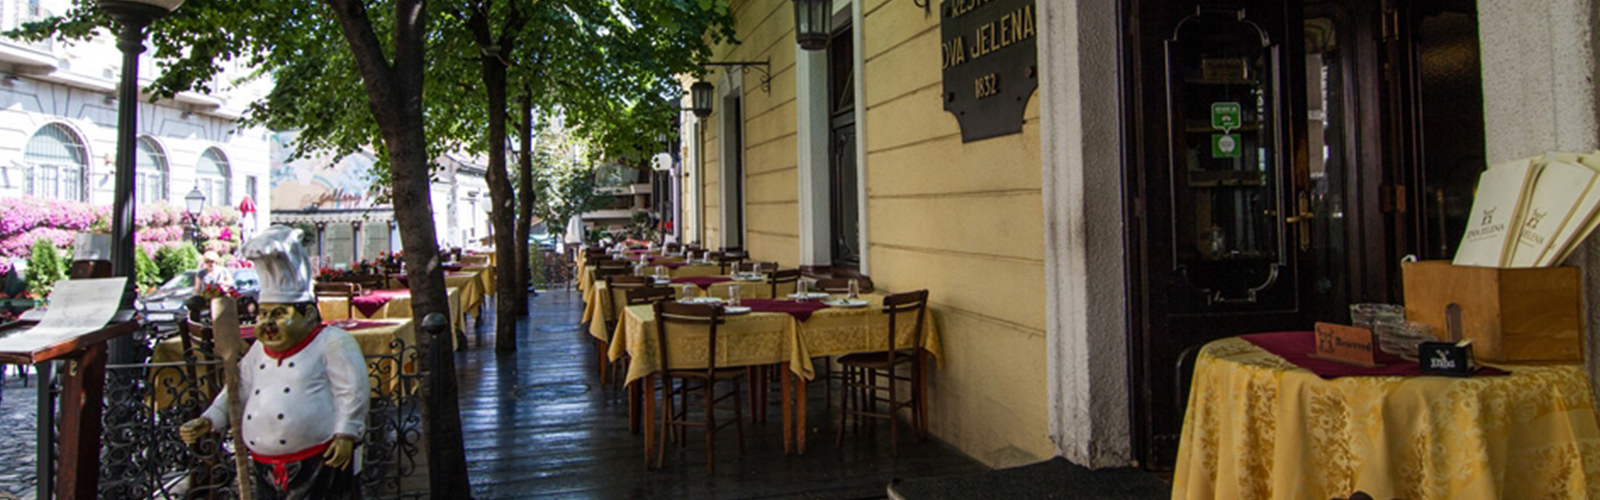 Concierge Belgrade | Restaurant Two deers